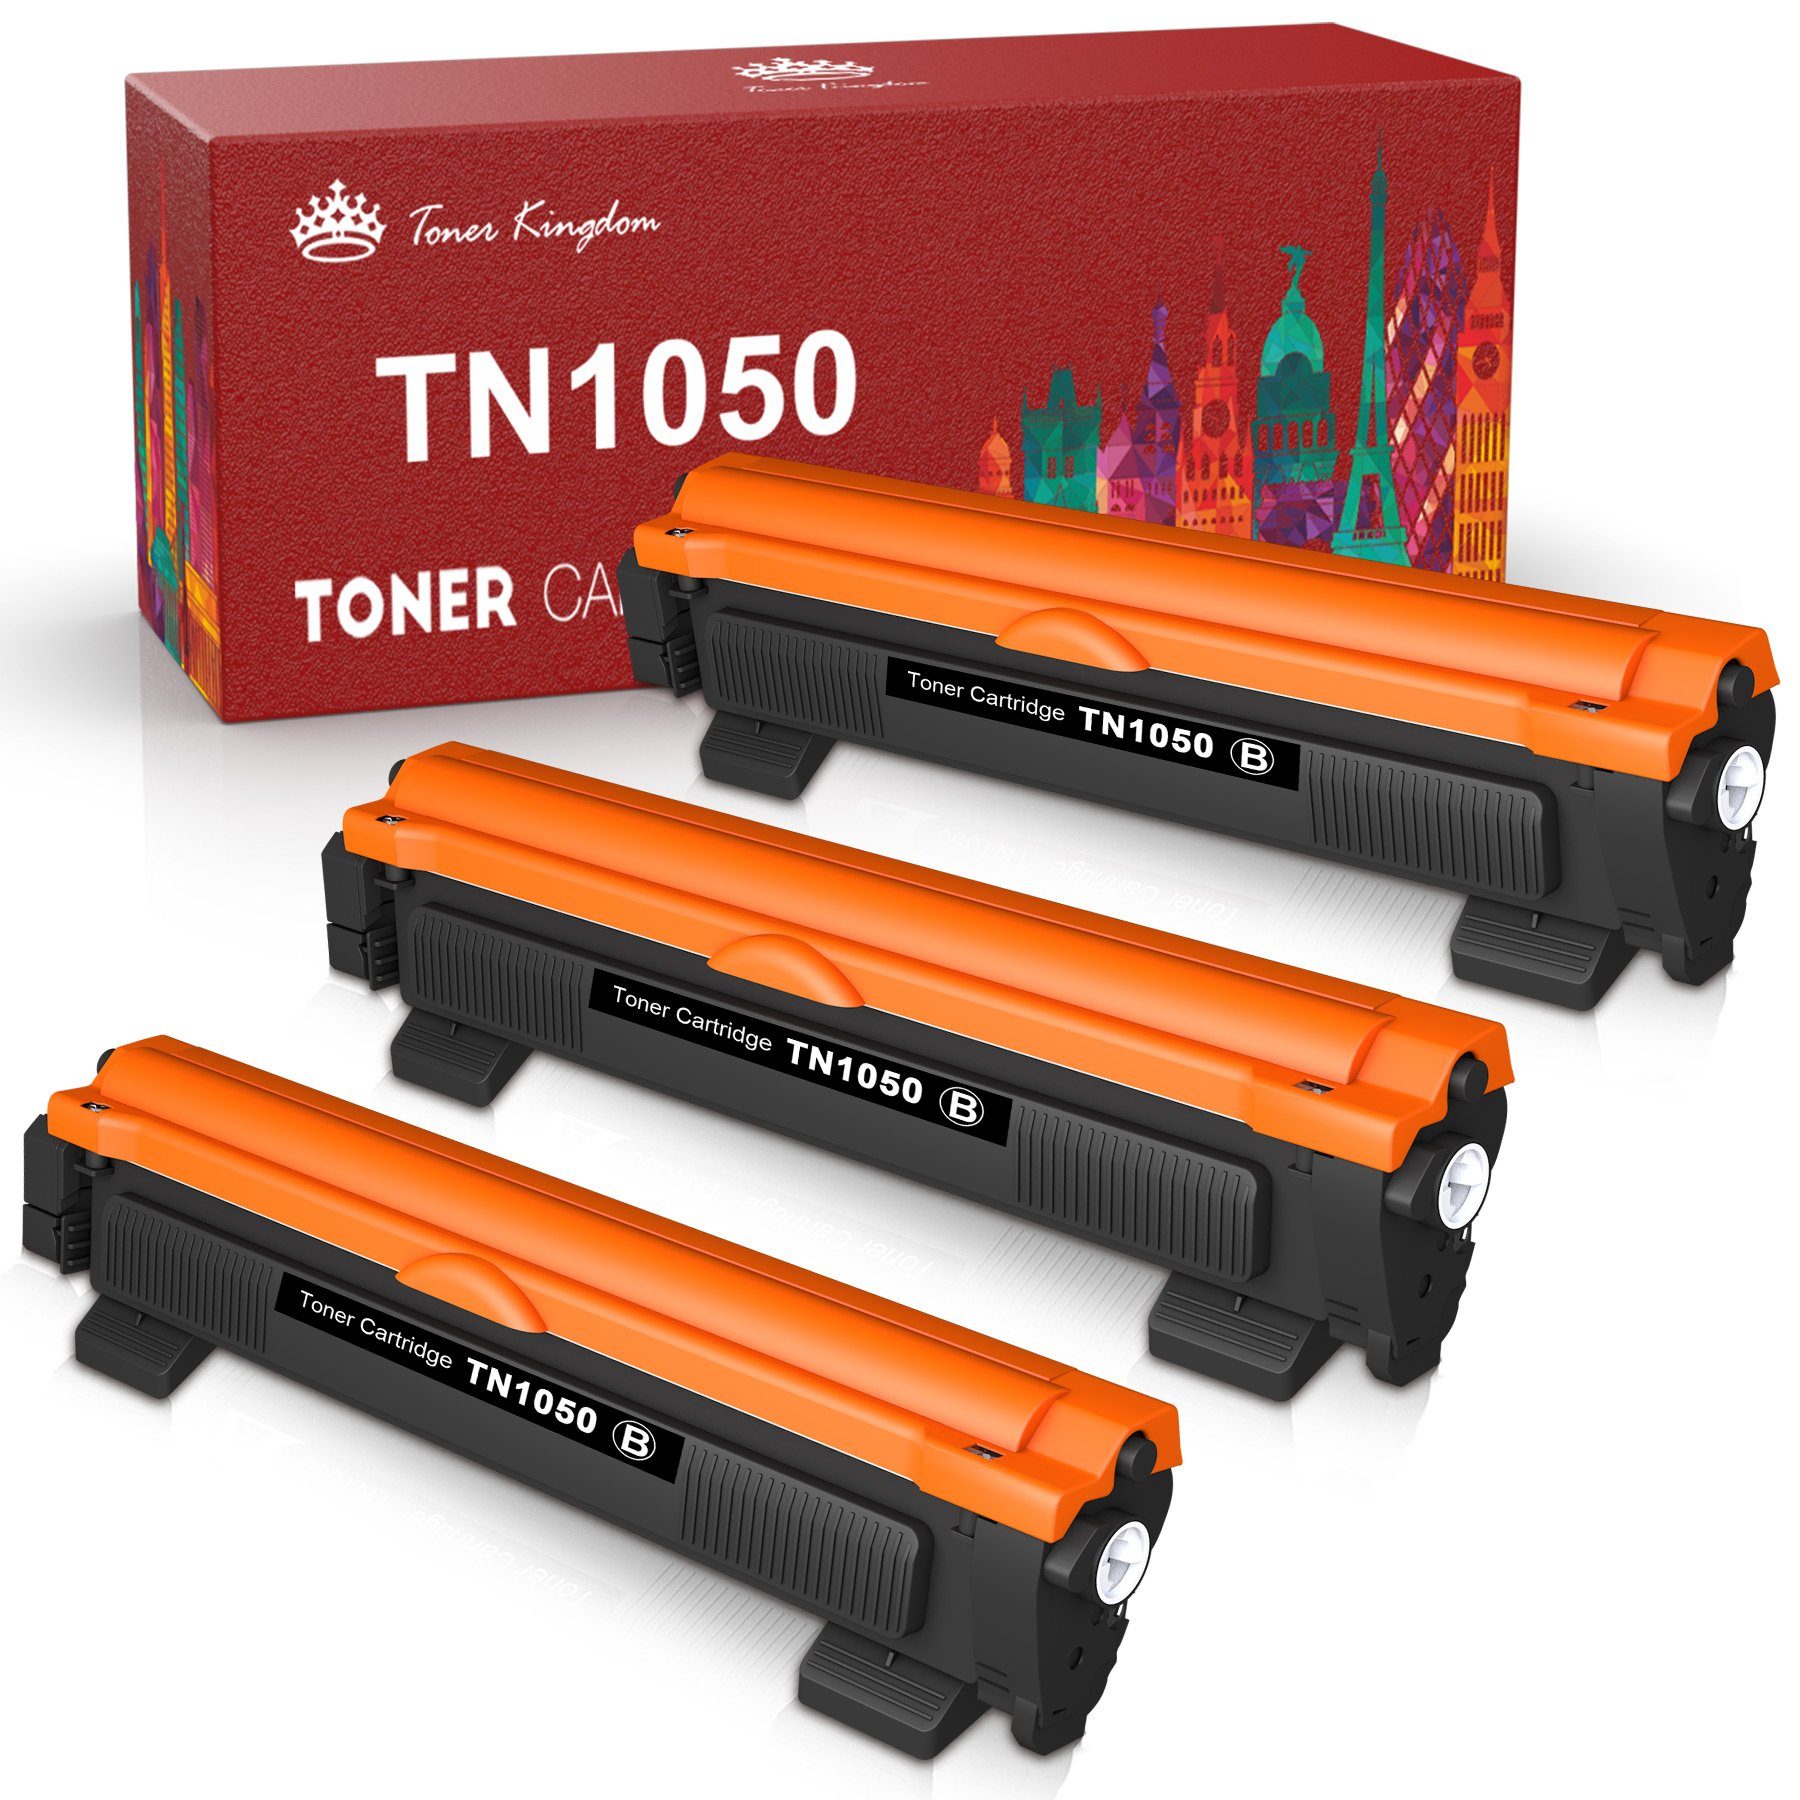 Toner Kingdom Tonerpatrone TN1050 TN 1050 für Brother MFC-1910W MFC-1810